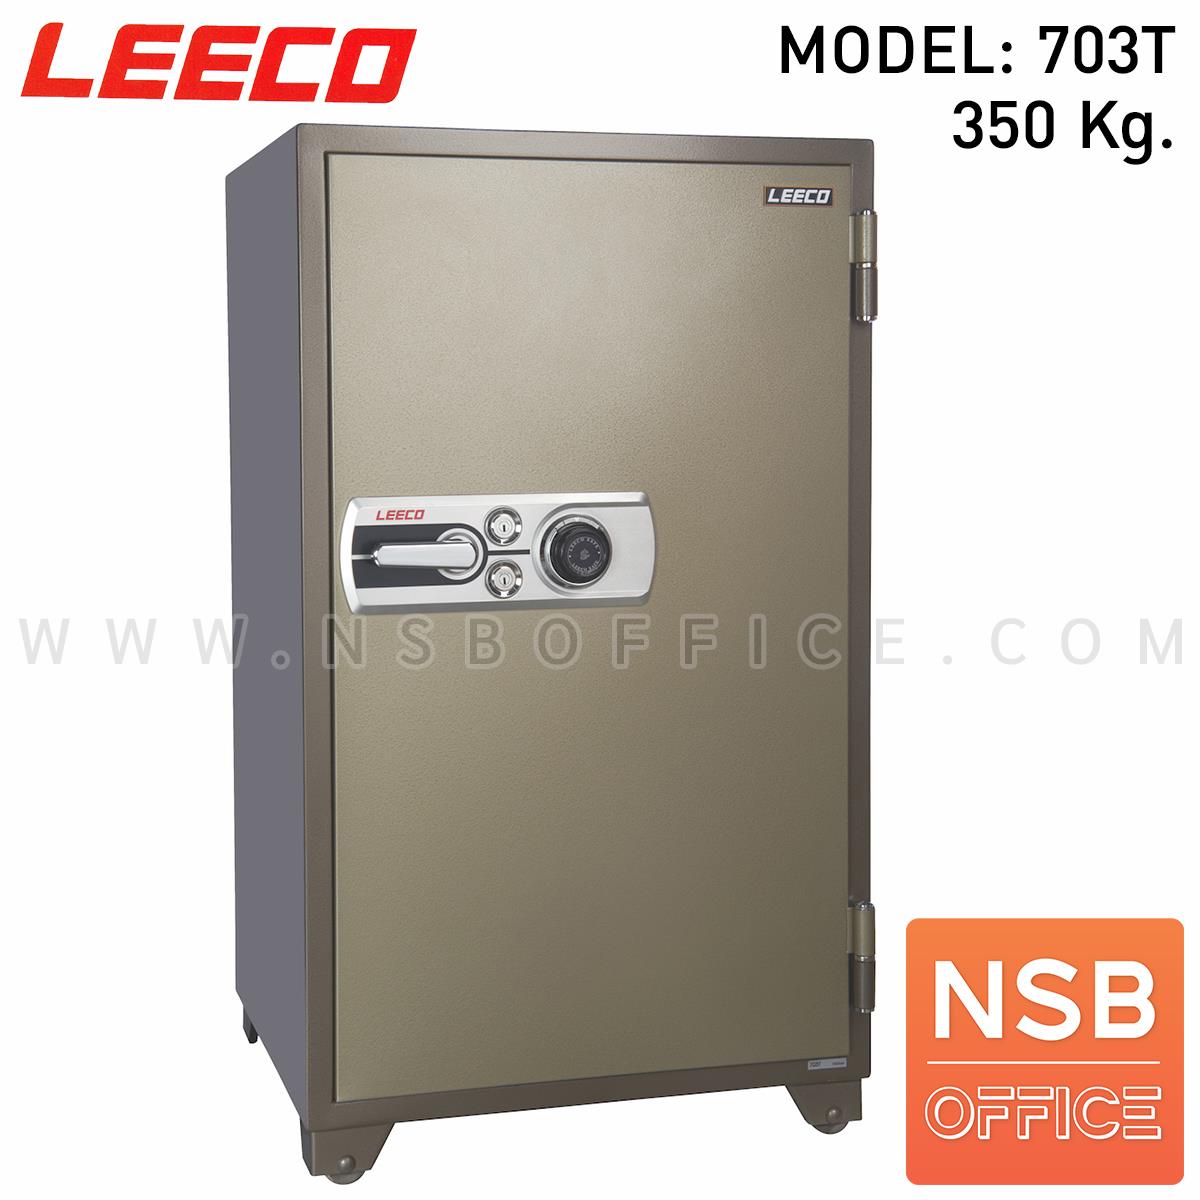 F02A034:ตู้เซฟนิรภัย 350 กก. ลีโก้ รุ่น LEECO-703T มี 2 กุญแจ 1 รหัส (เปลี่ยนรหัสได้)   